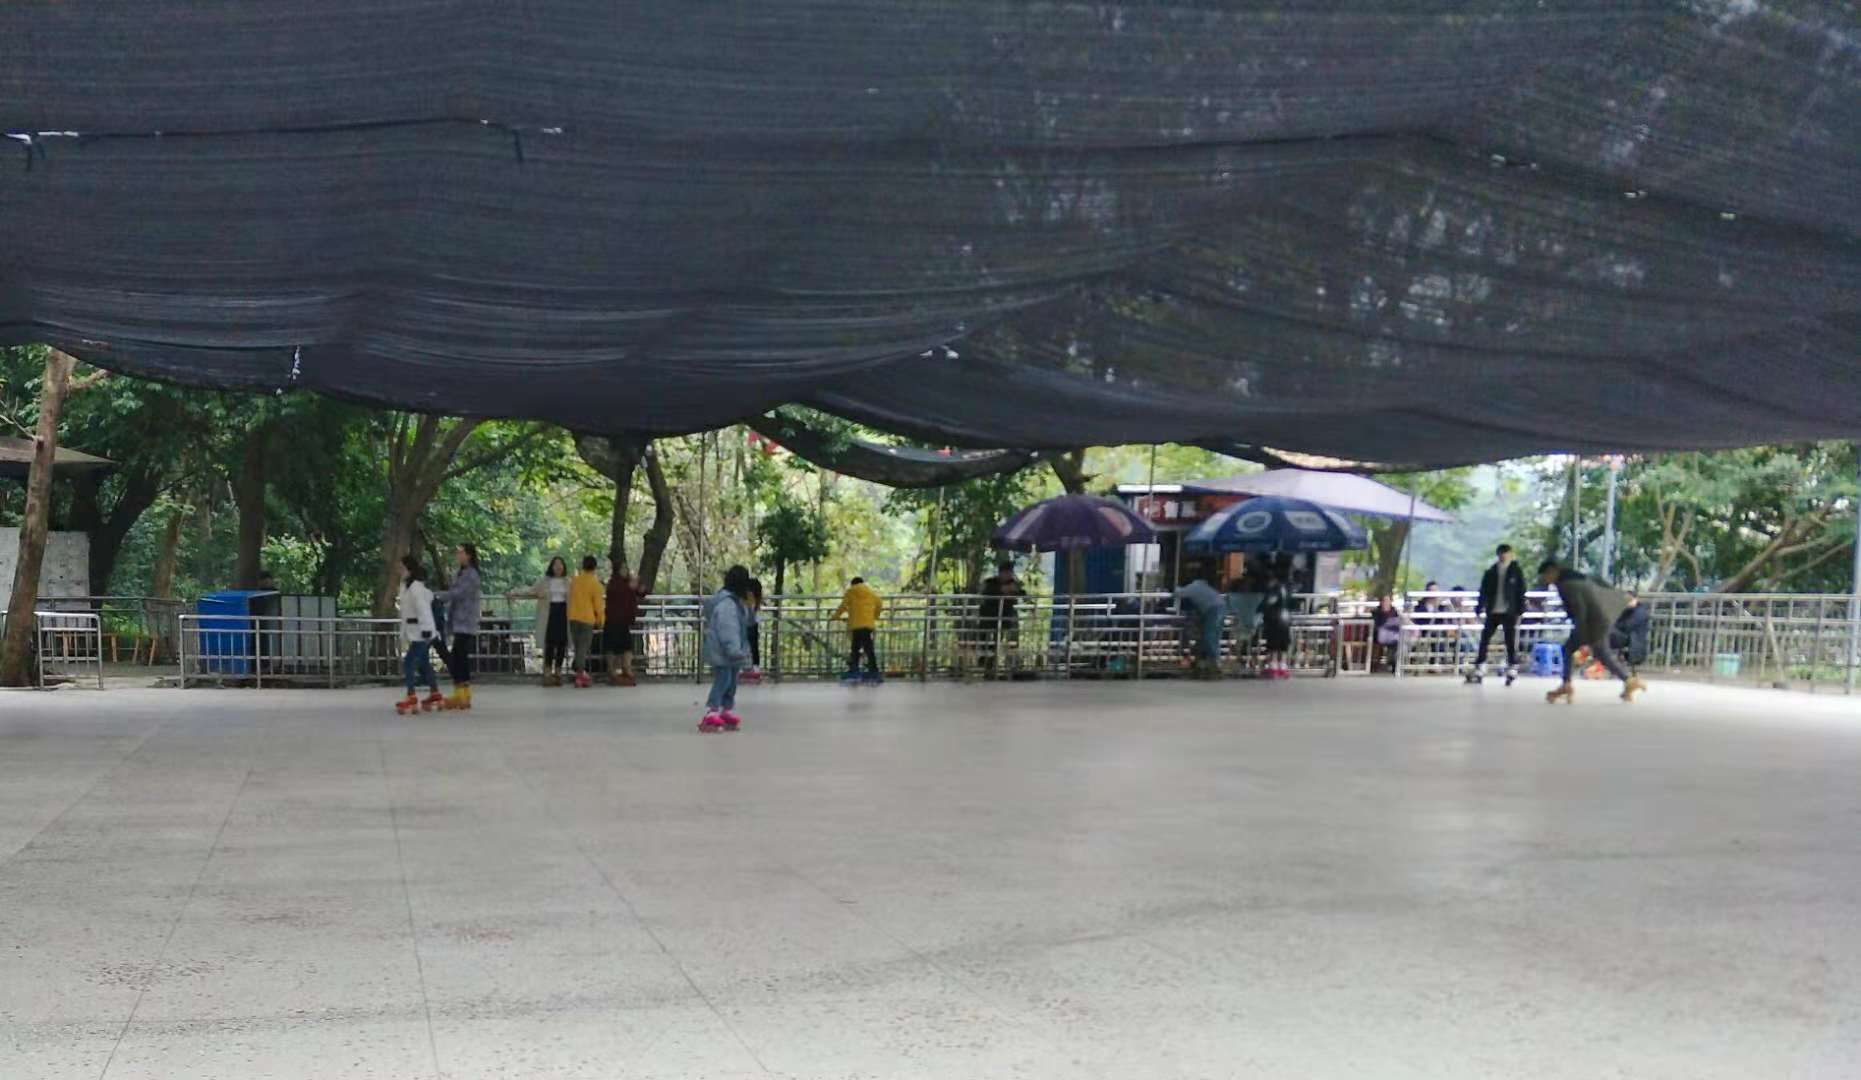 玉屏公园游乐场图片